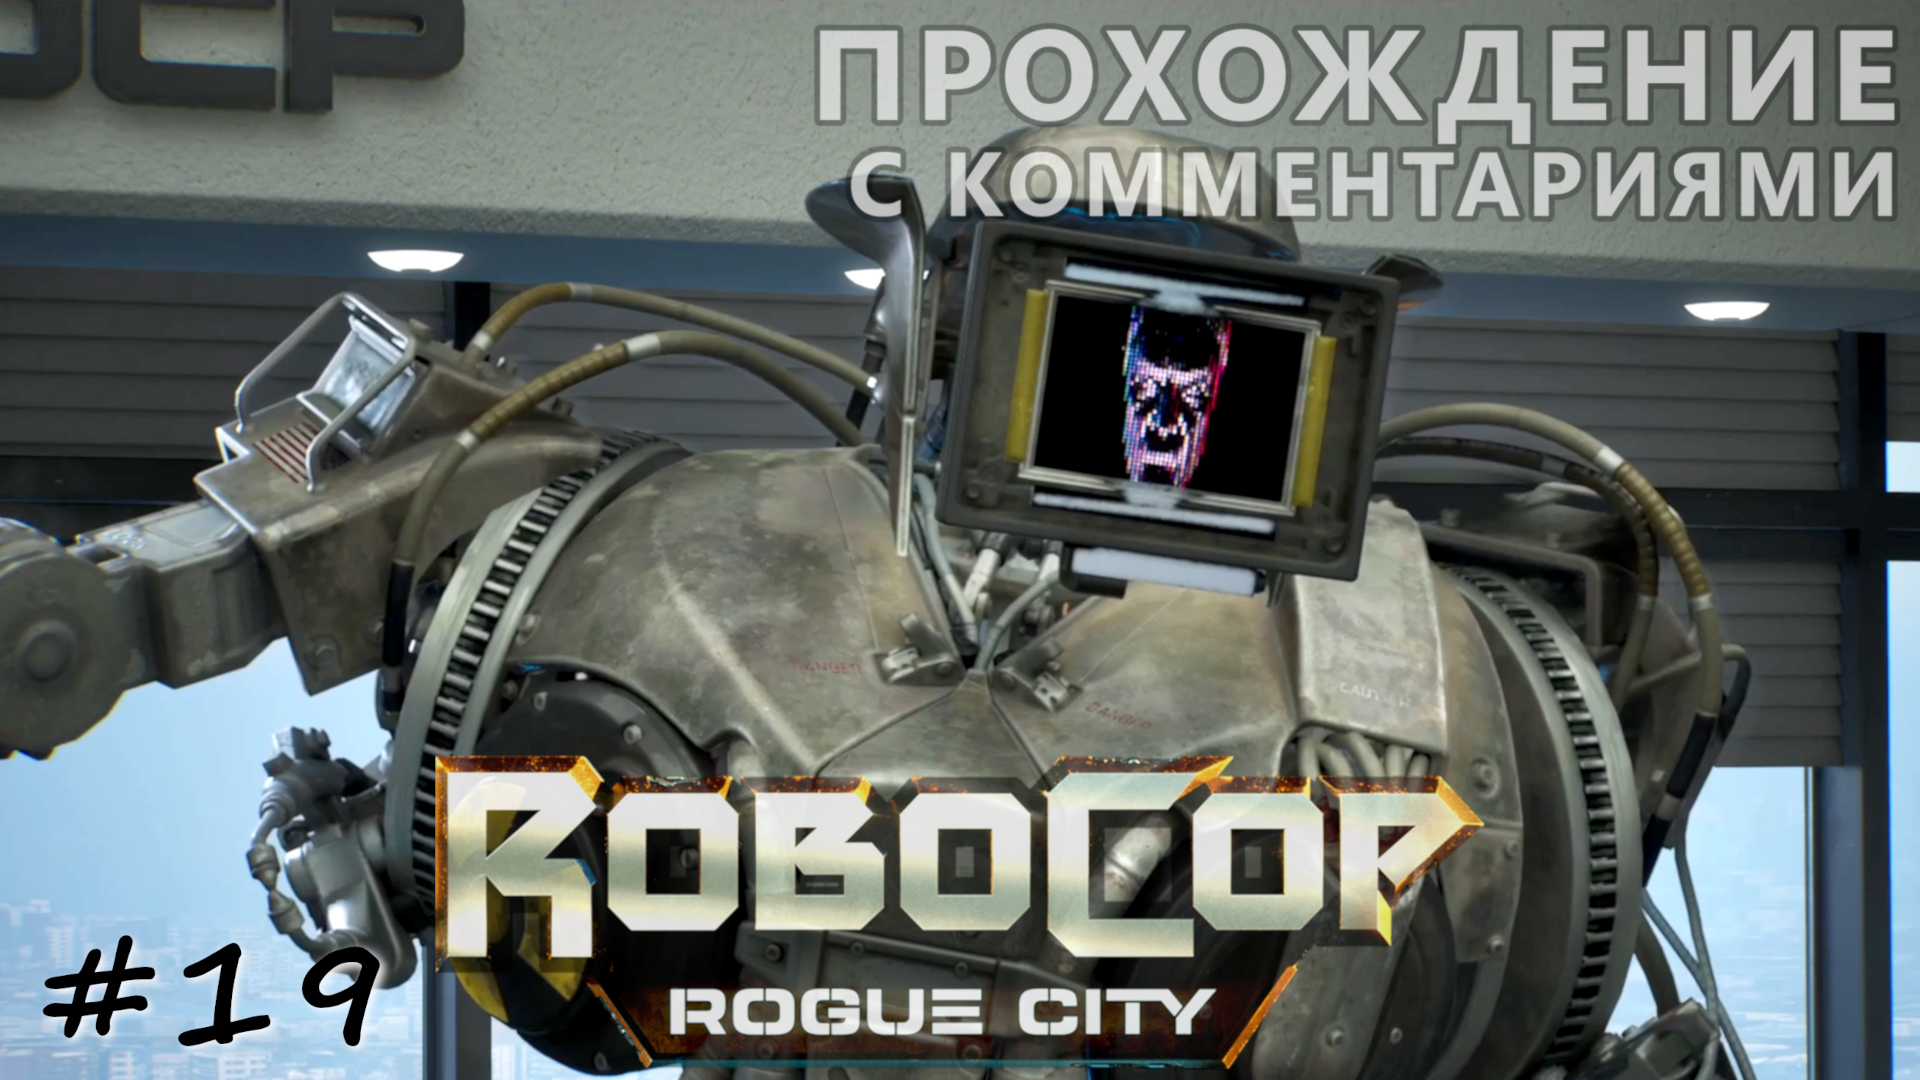 Старый друг. Финал - #19 - RoboCop Rogue City